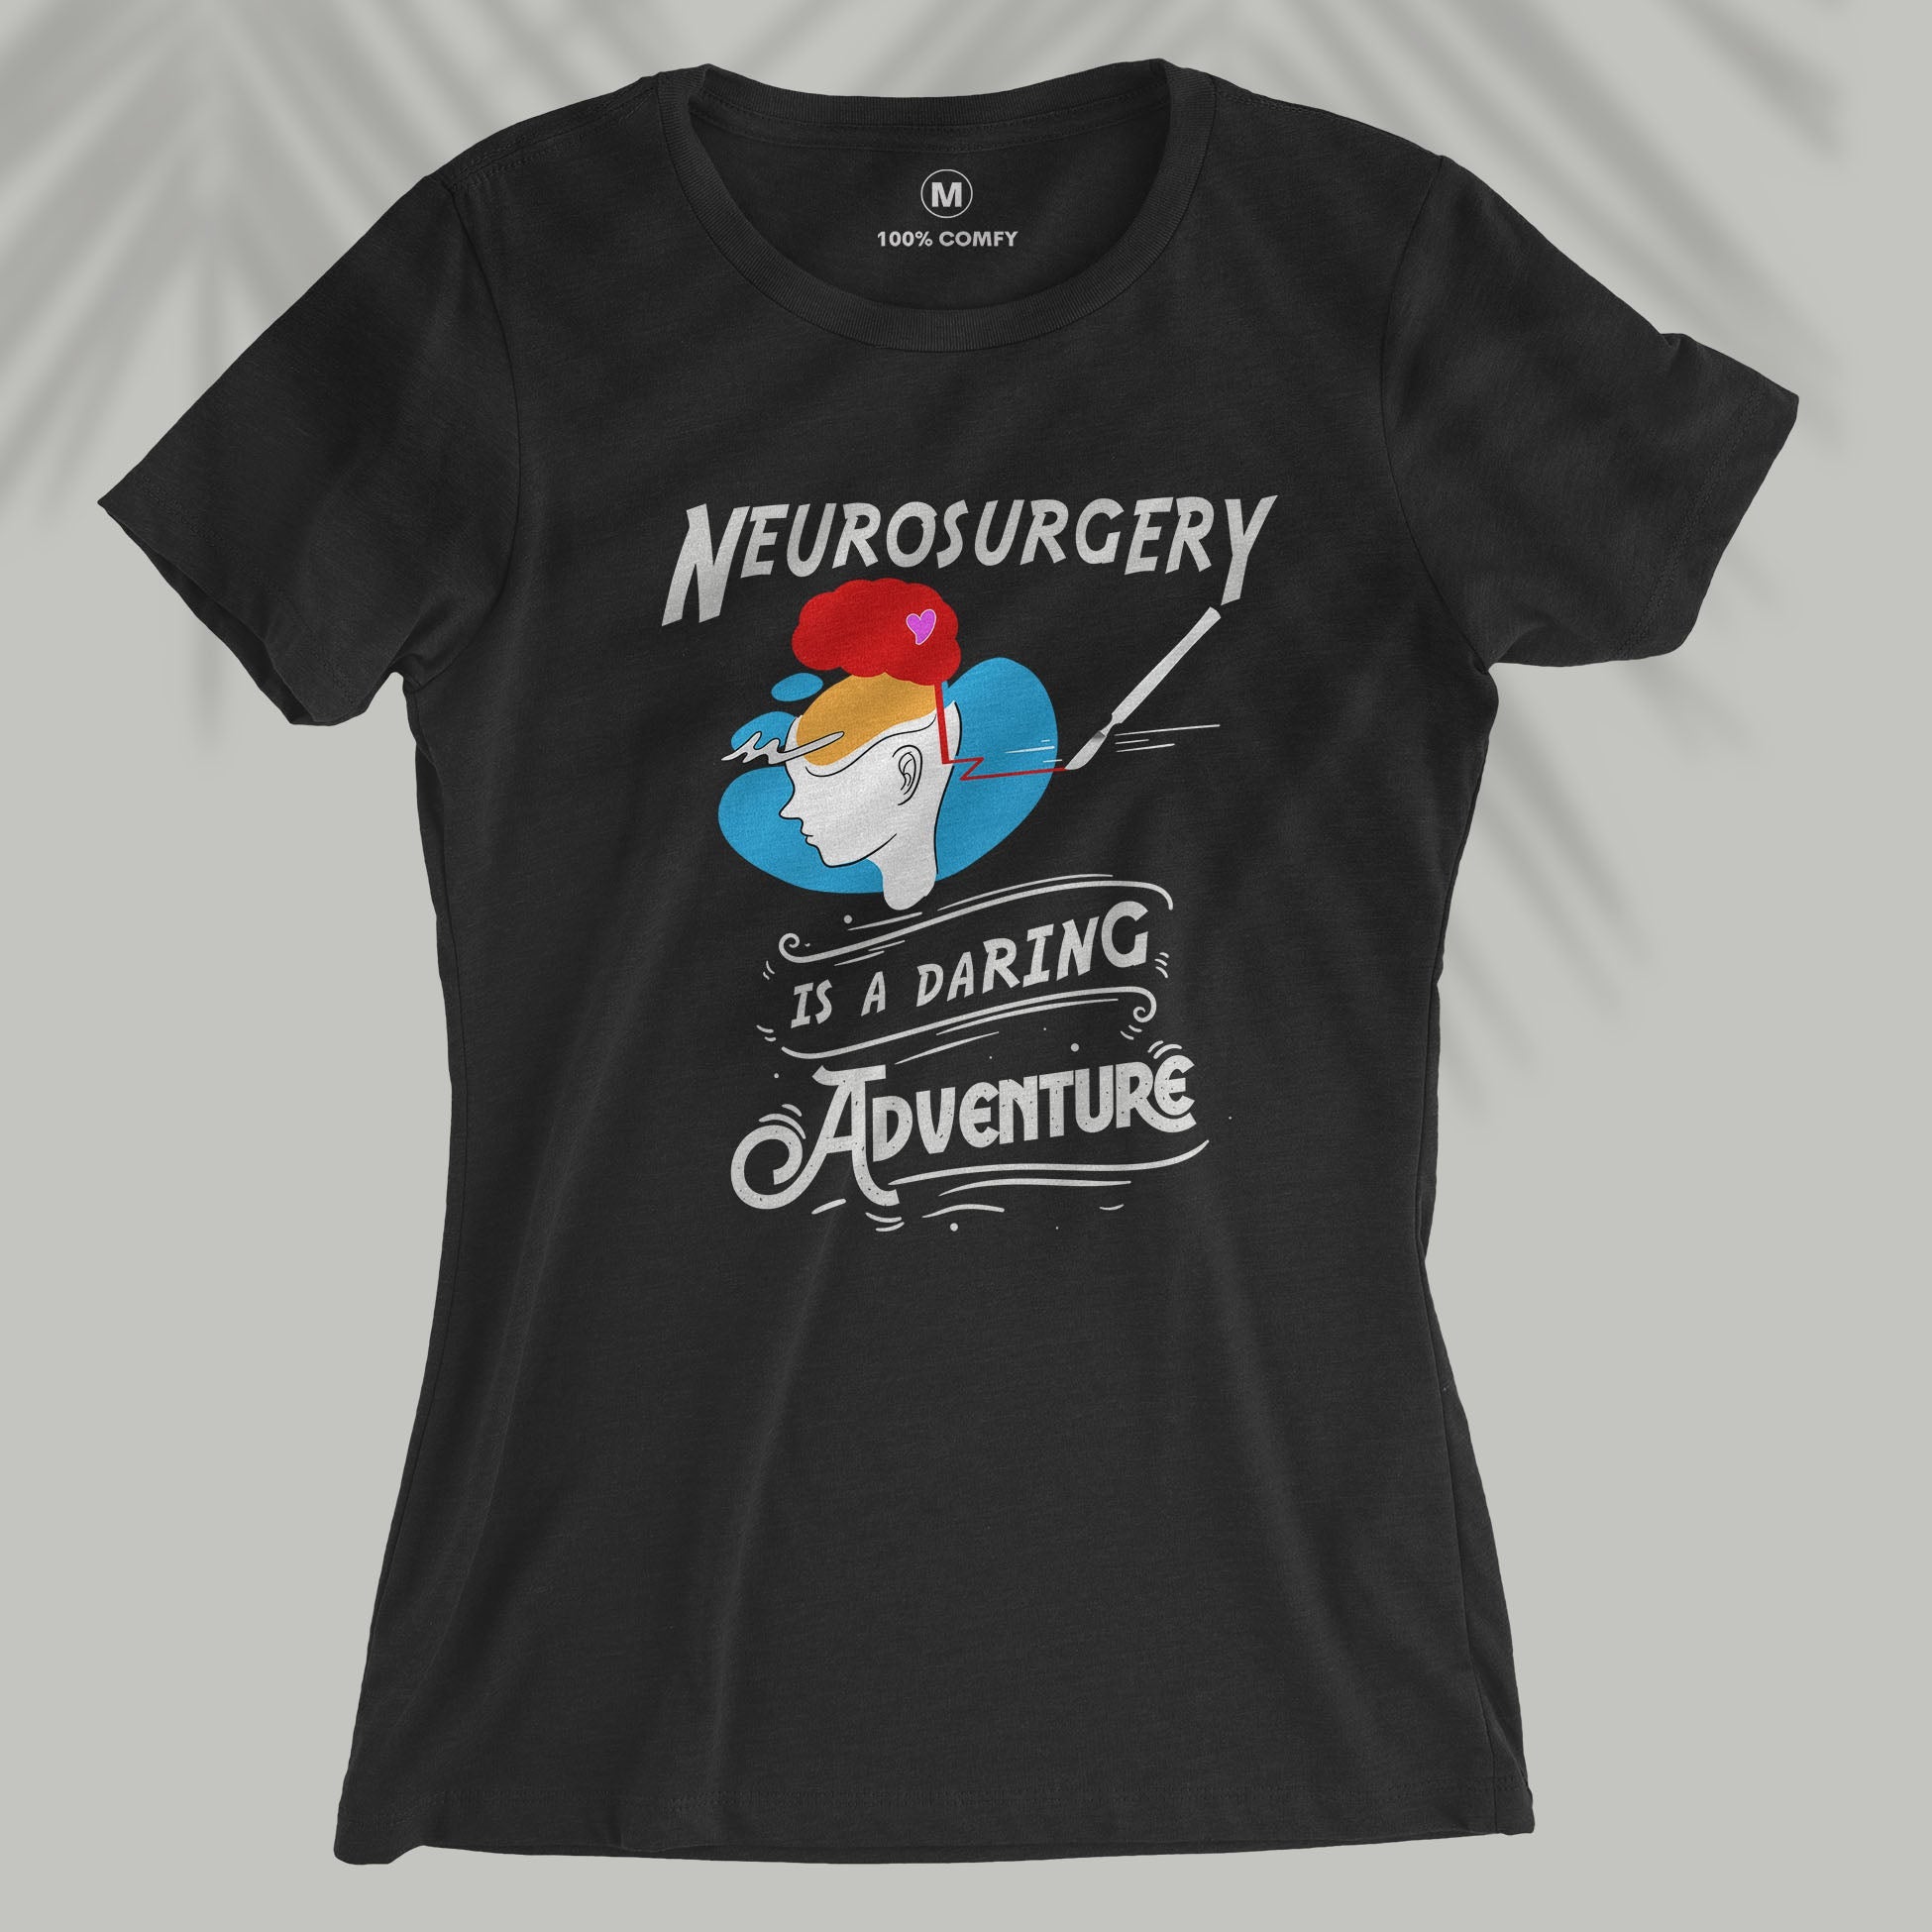 Neurosurgery is a daring adventure - Women T-shirt